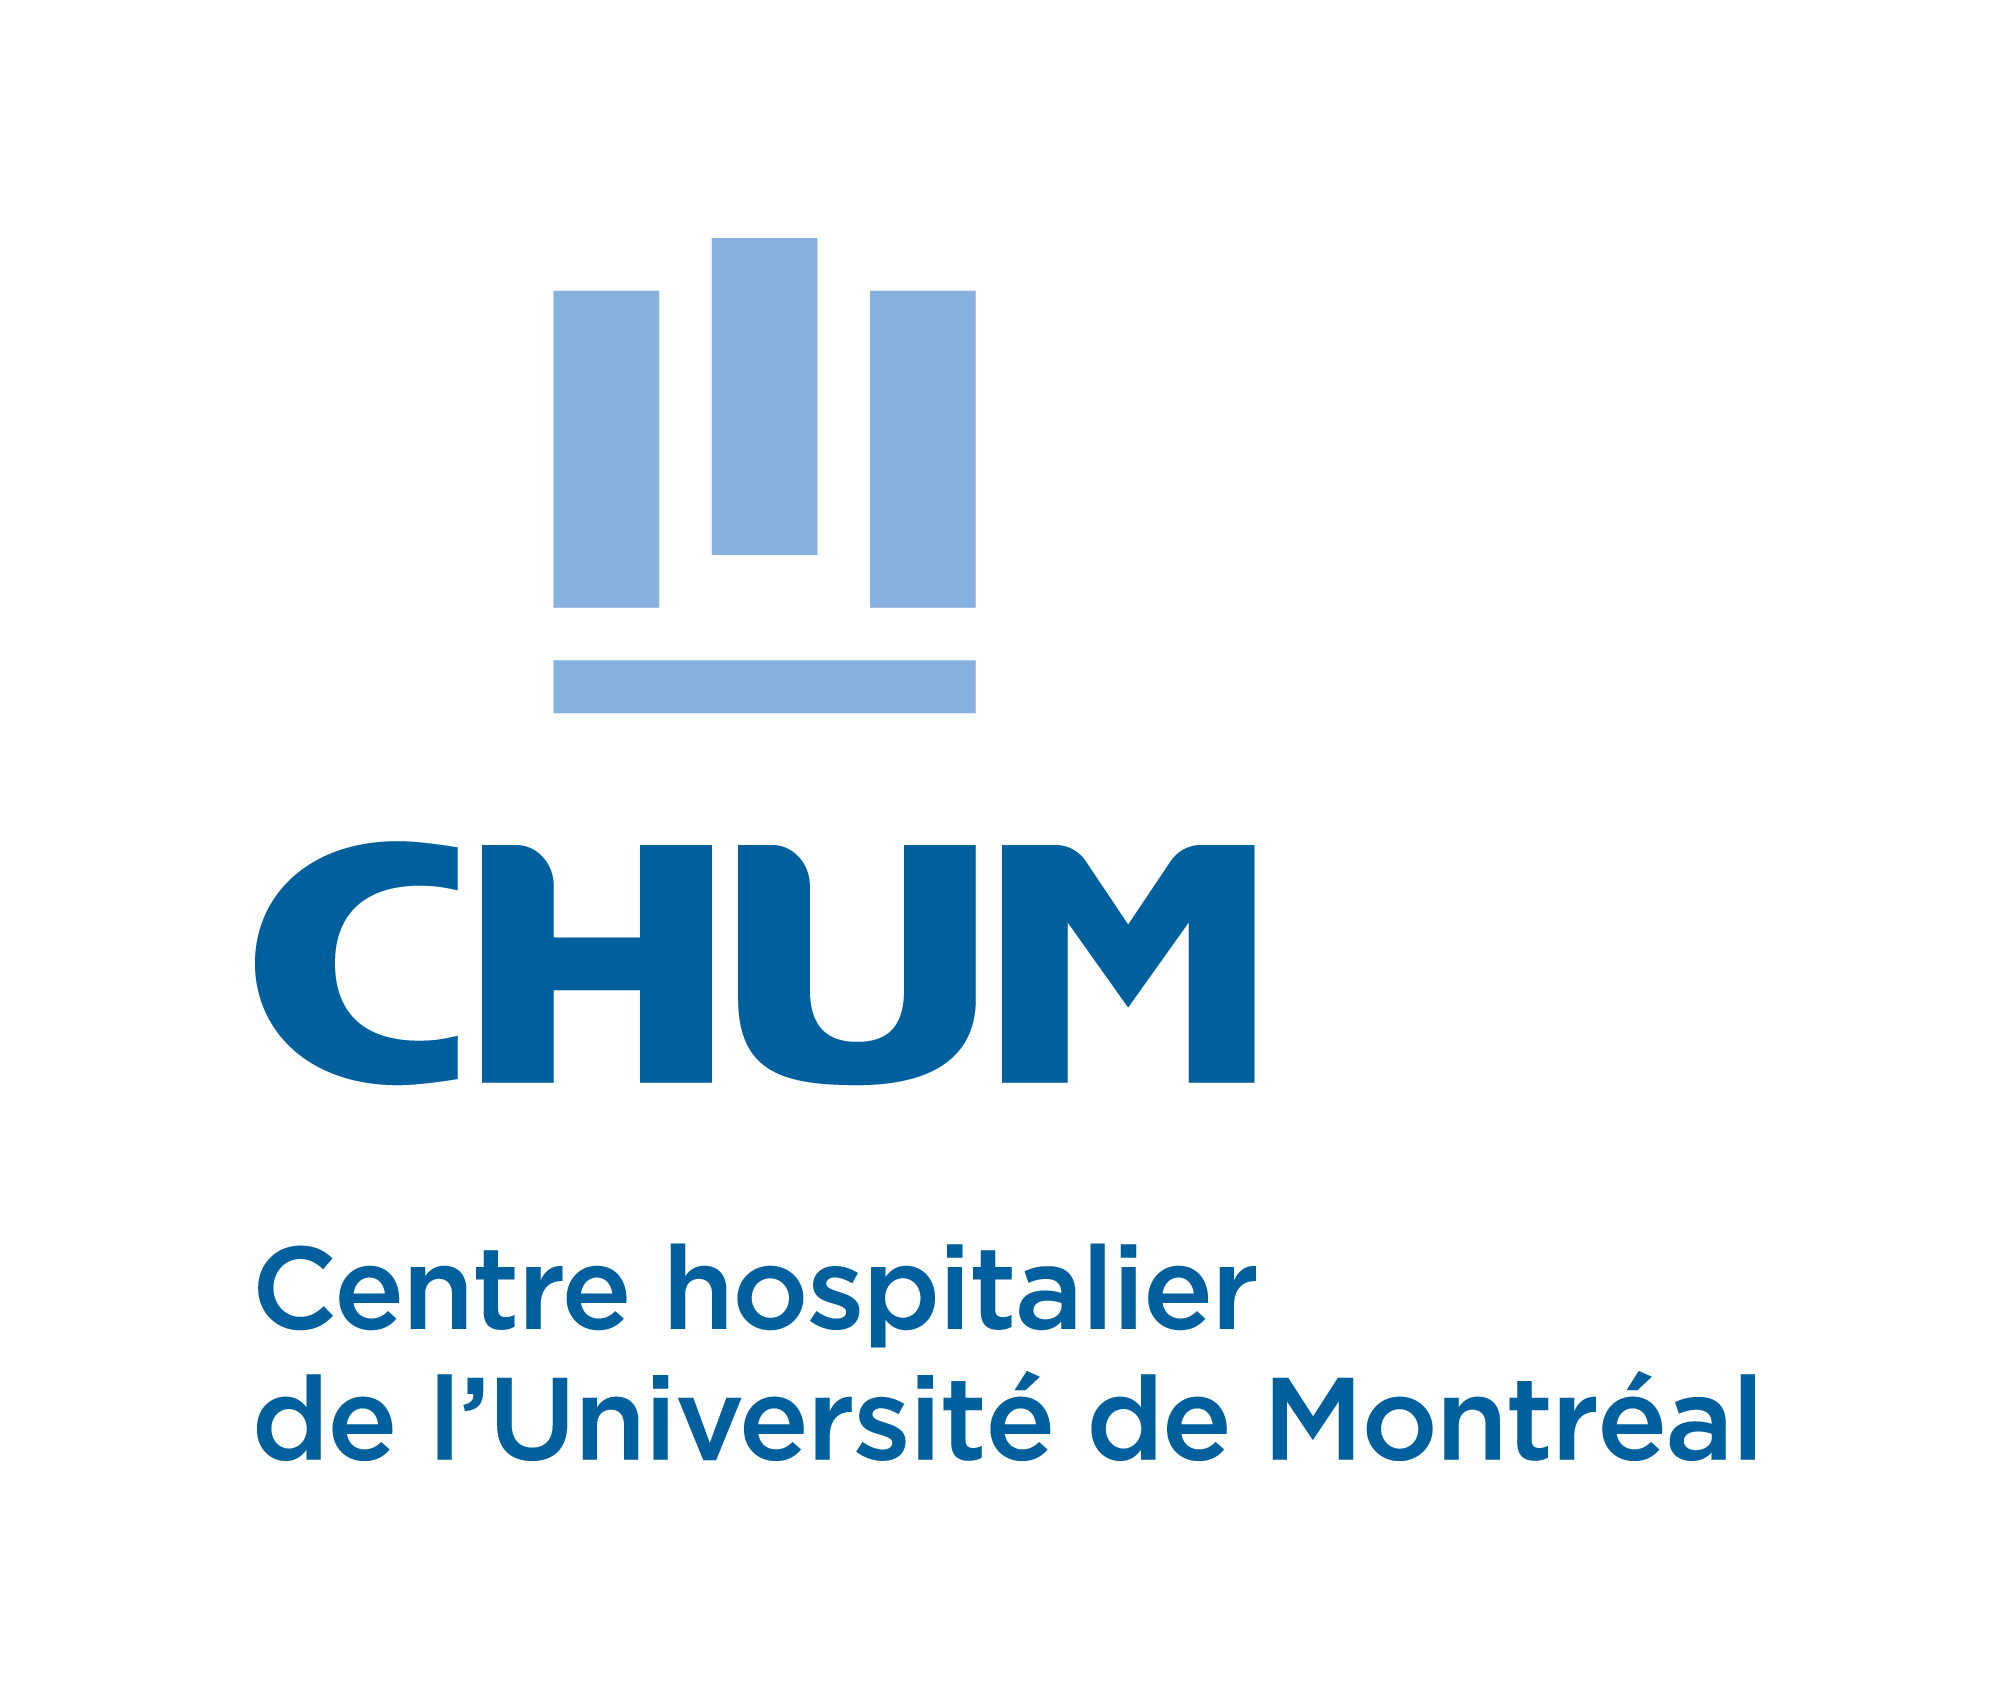 Centre hospitalier de l'Université de Montréal (CHUM)